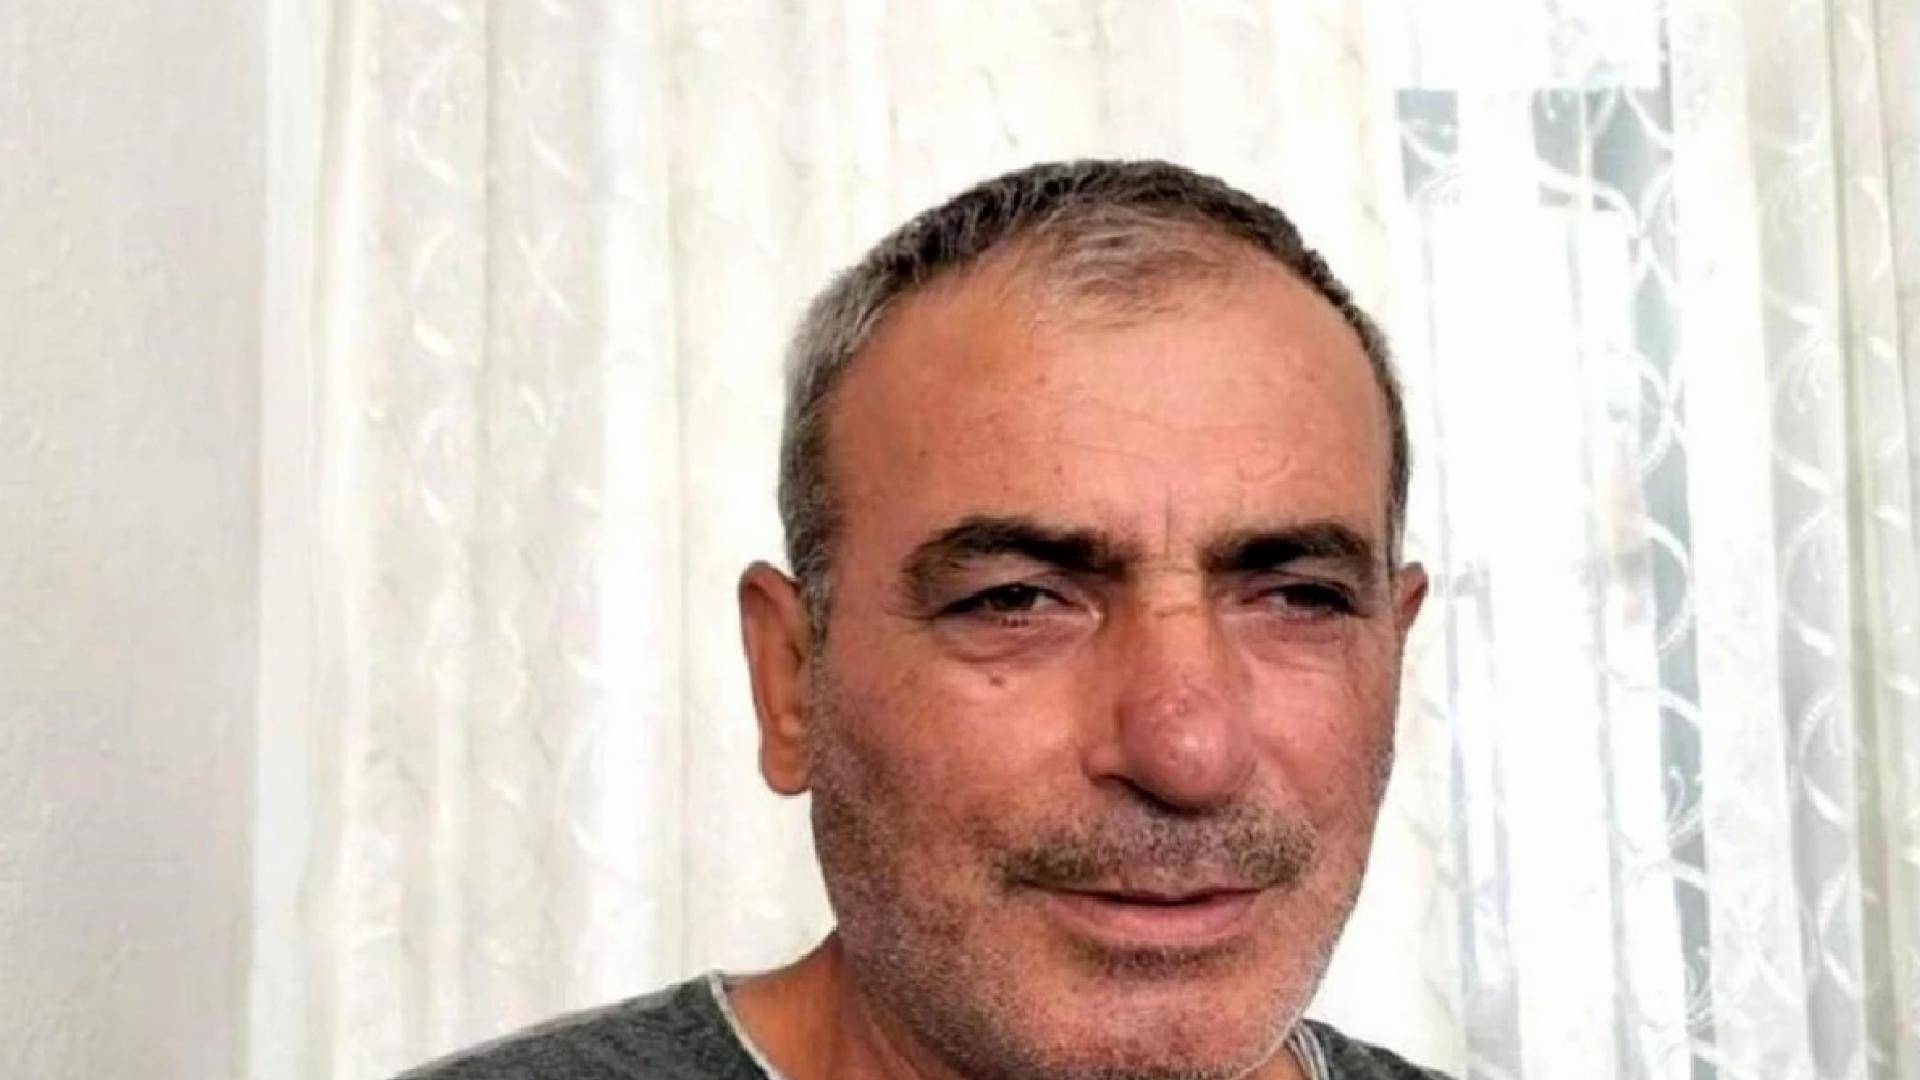 Aydın'da ilkokul inşaatında 58 yaşındaki işçi yaşamını kaybetti